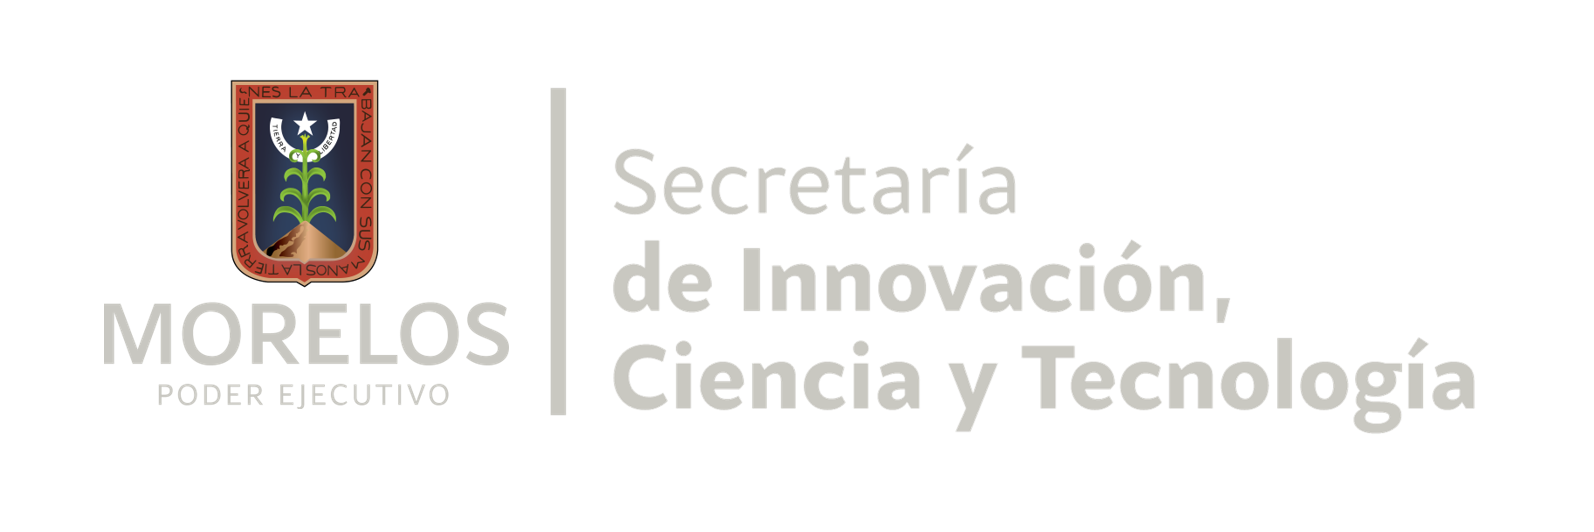 Secretaría de Innovación Ciencia y Tecnología